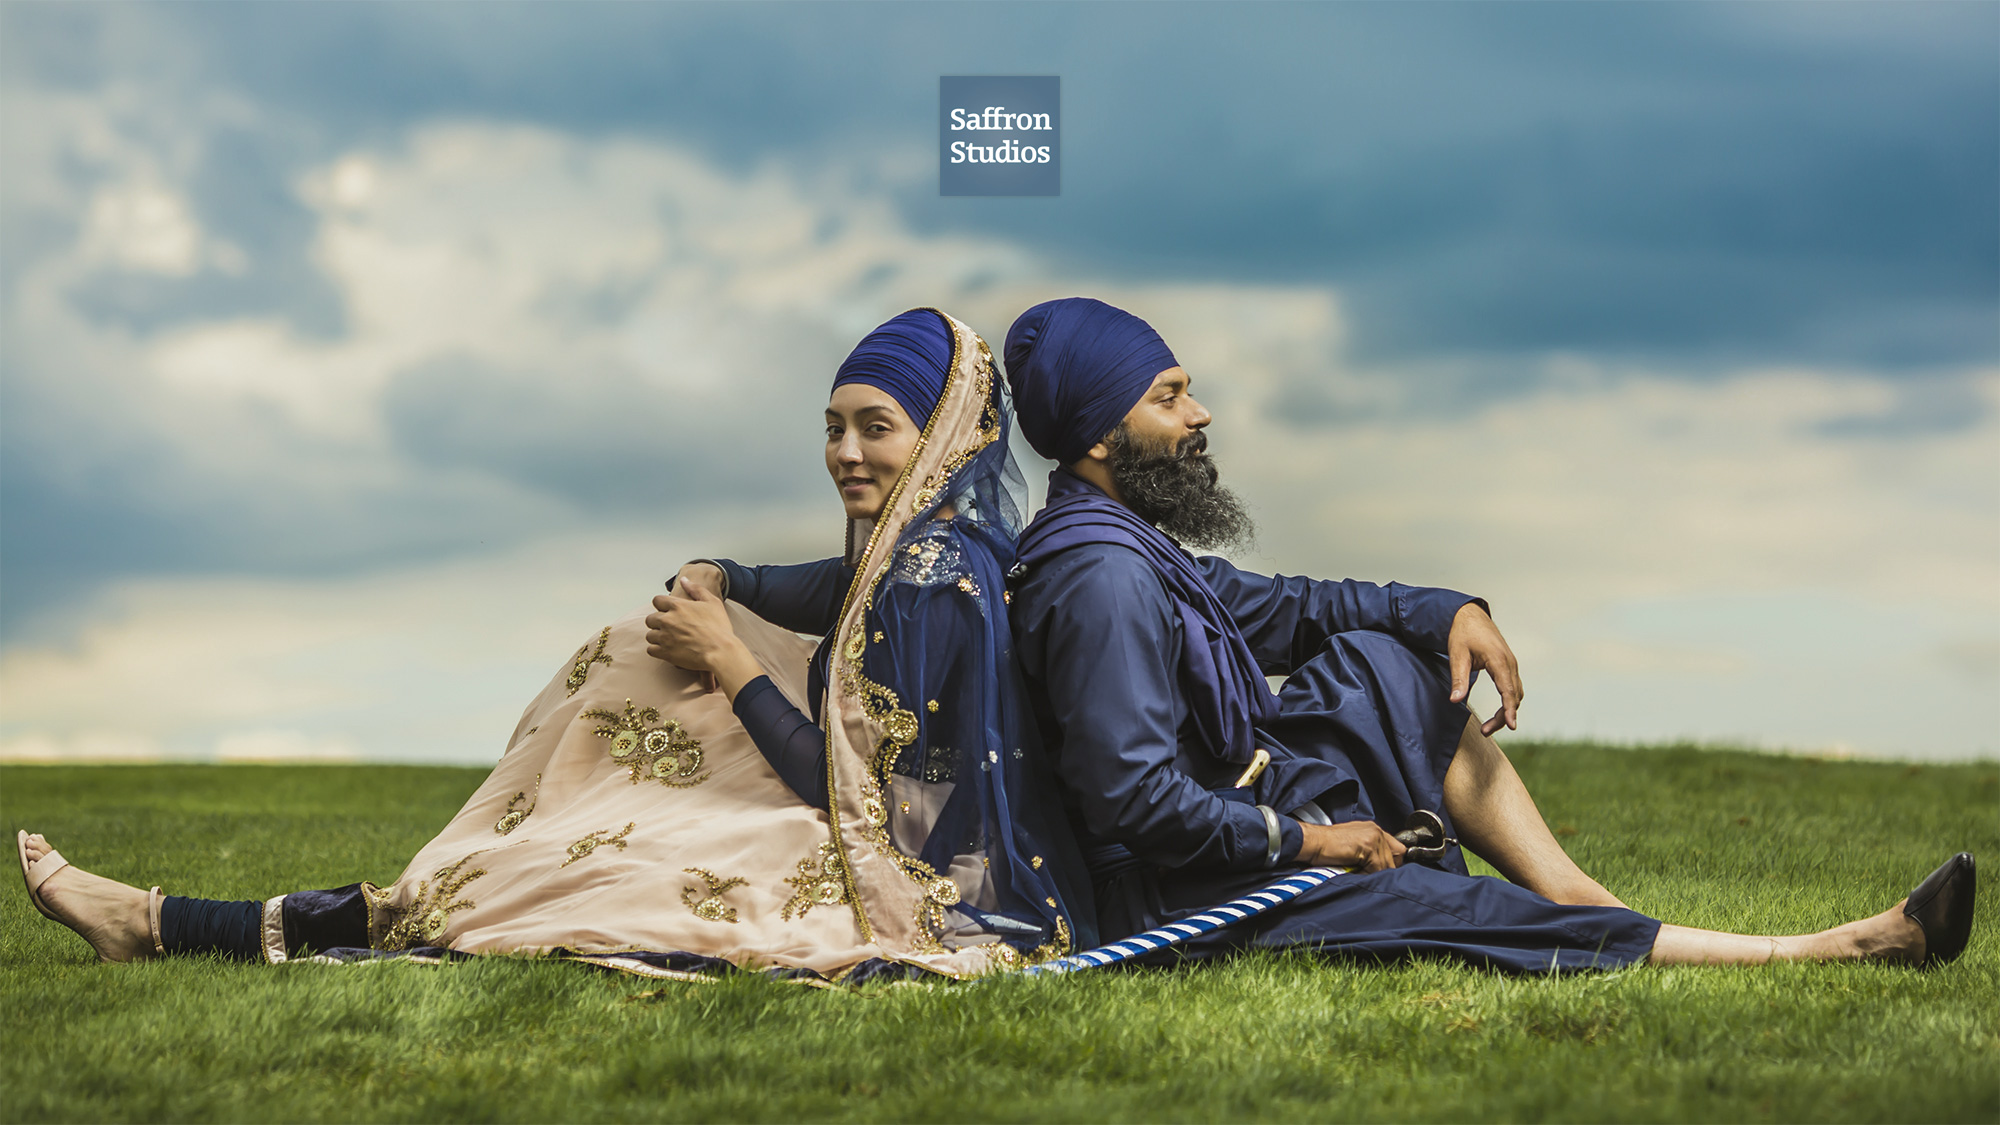 Gursikh Wedding Couple Sikh - Sikh Couple Pre Wedding - 2000x1125 Wallpaper  